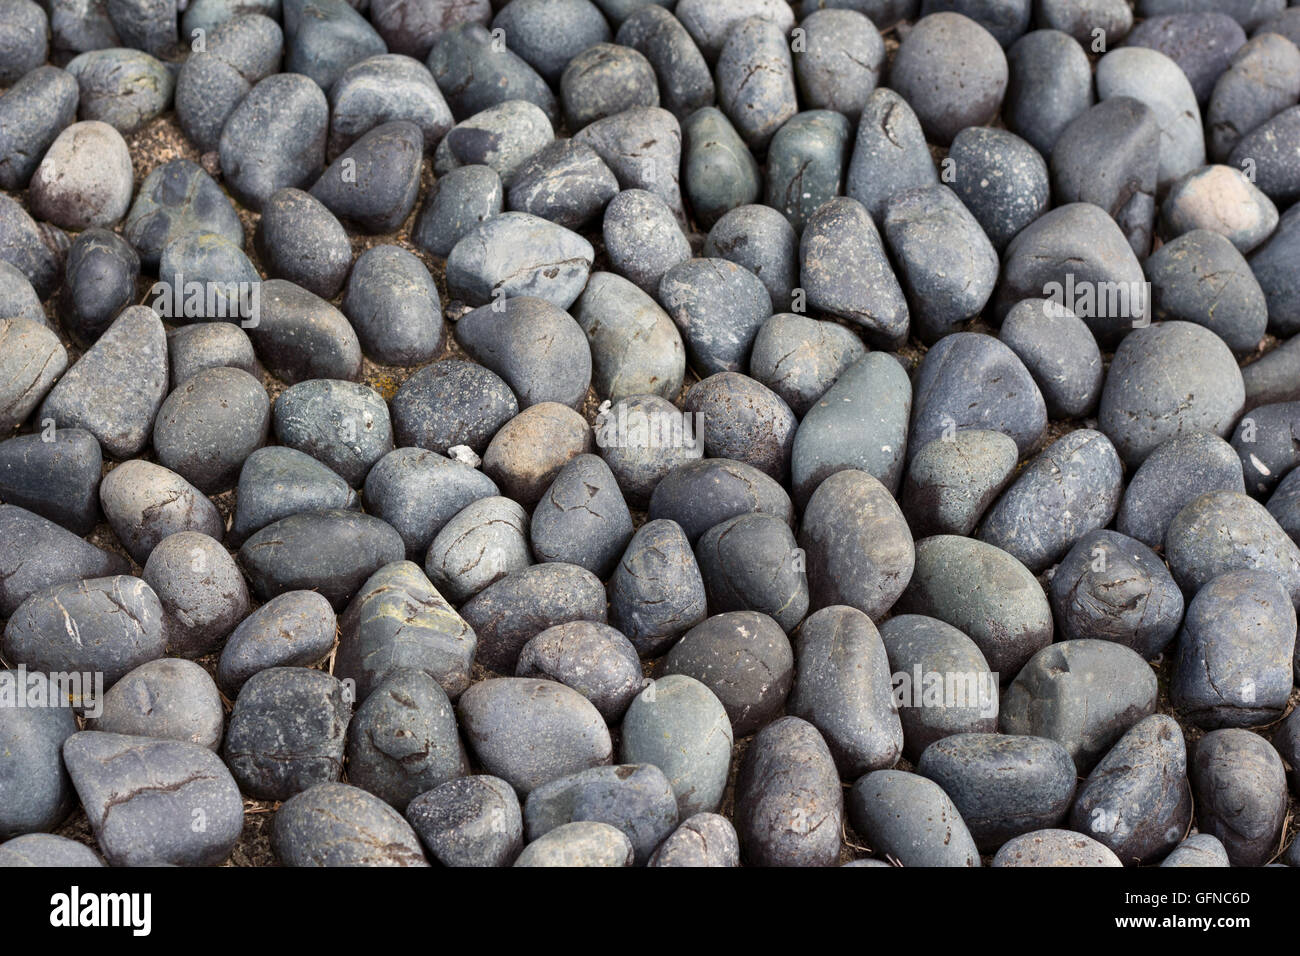 Round sleek cobbles in full frame Stock Photo